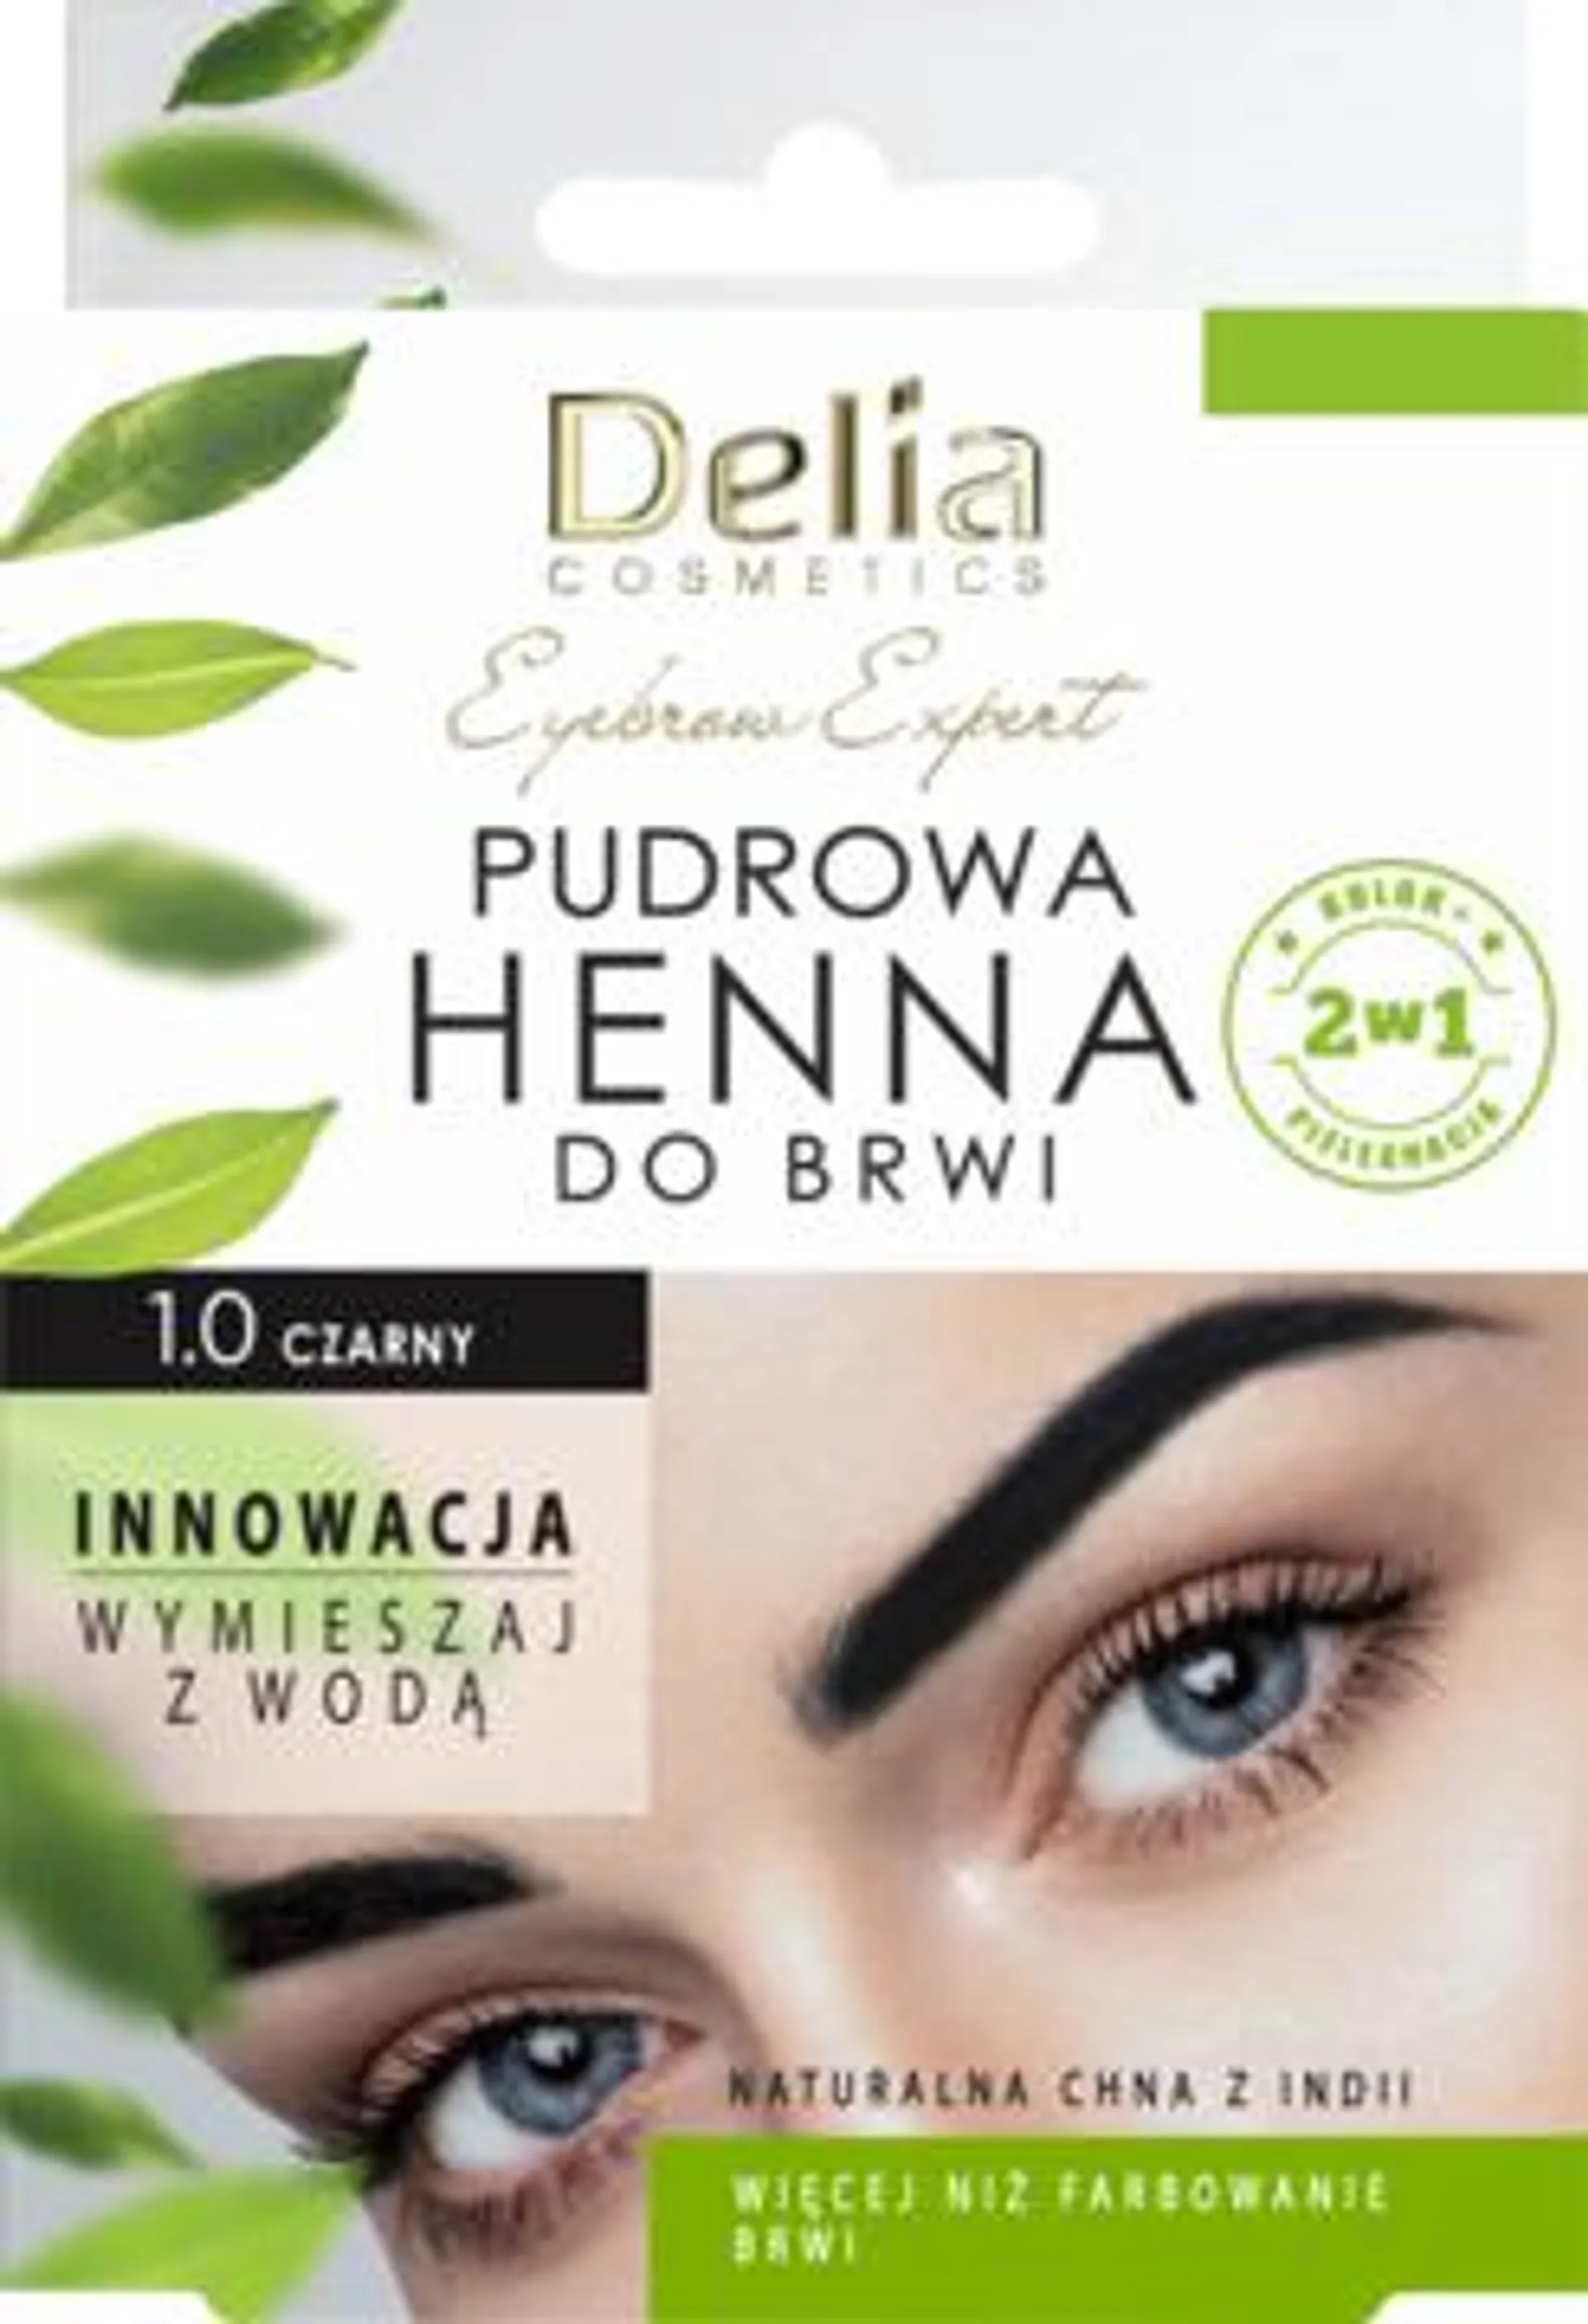 DELIA COSMETICS Eyebrow Expert henna do brwi, pudrowa, nr 1.0 Czarny 4 g, nr kat. 365937